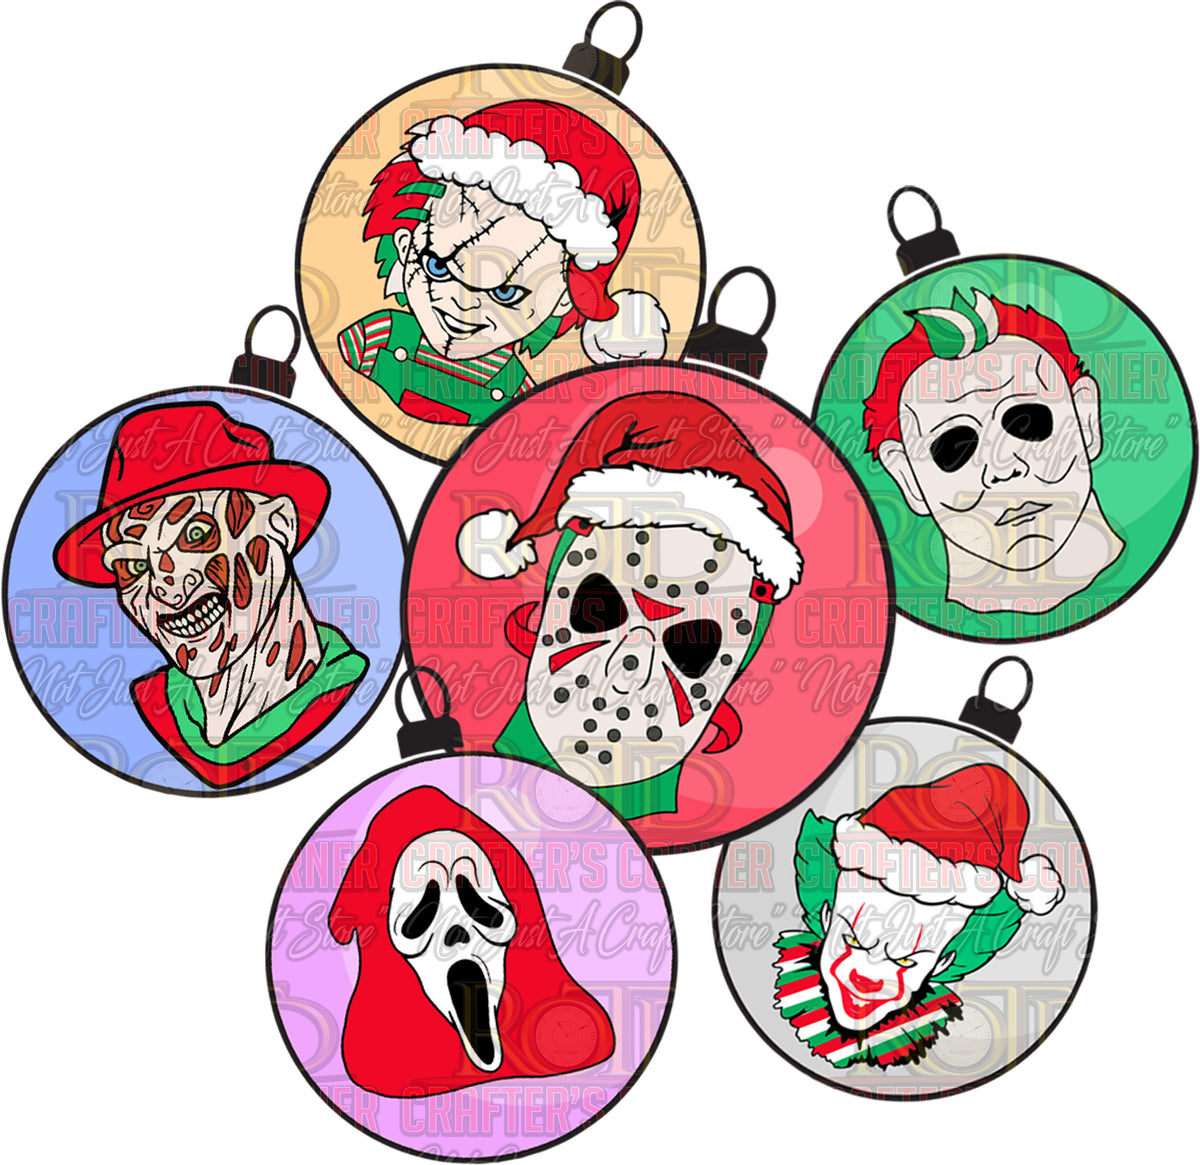 Creeper Ornaments